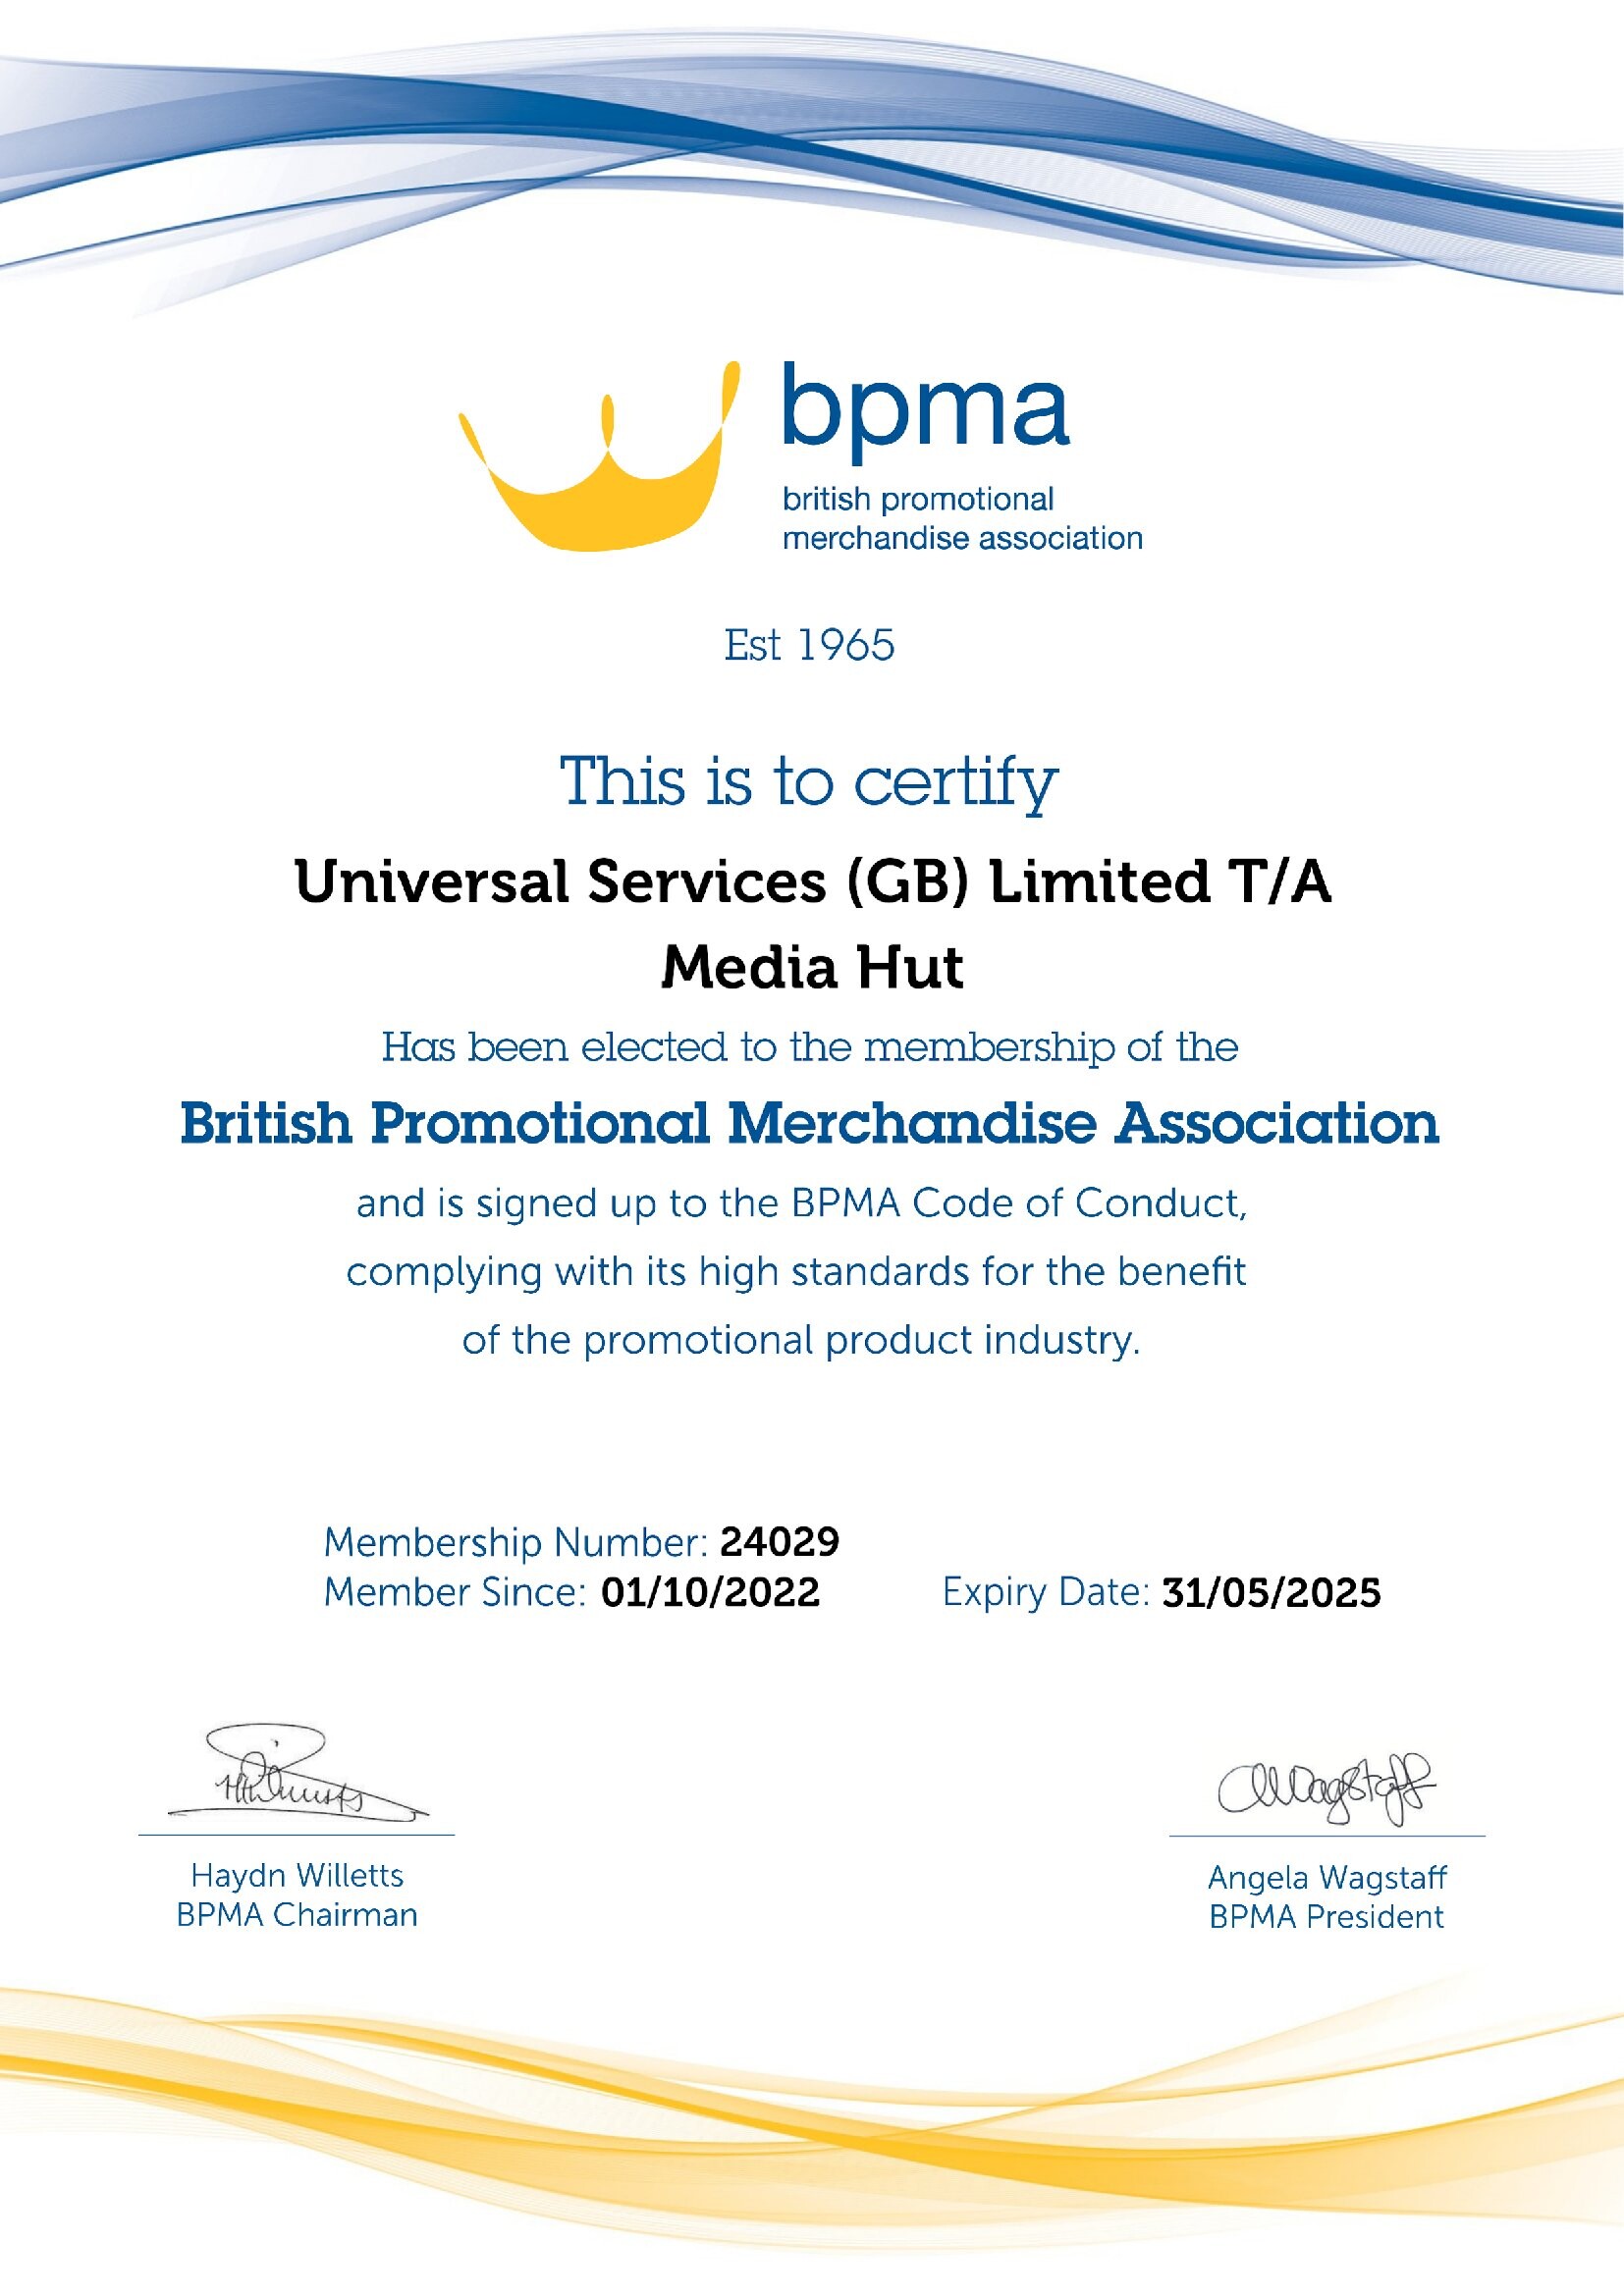 BPMA membership certificate